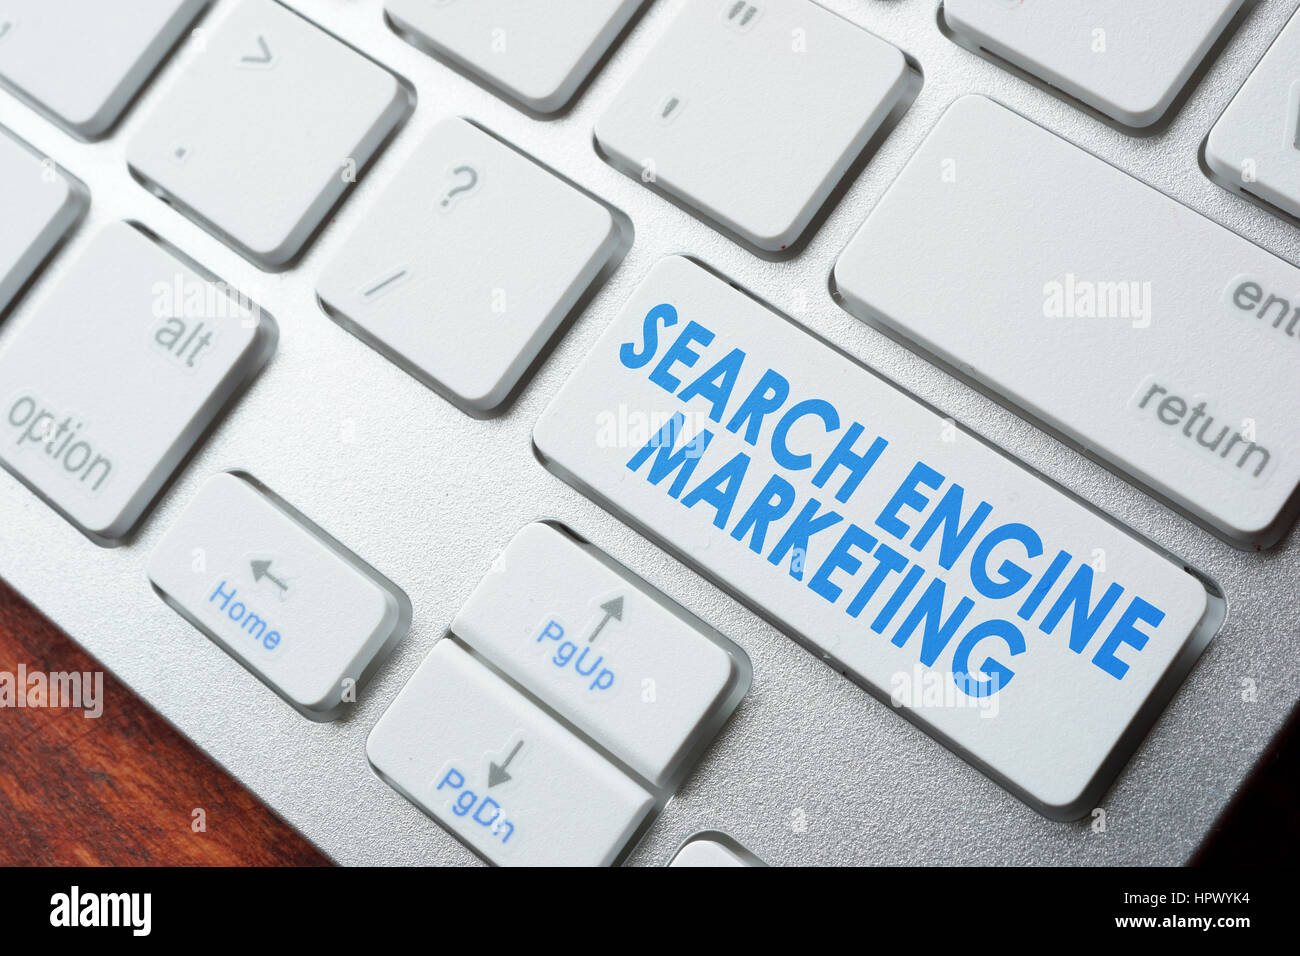 Abreviatura SEM search engine marketing en un teclado. Foto de stock